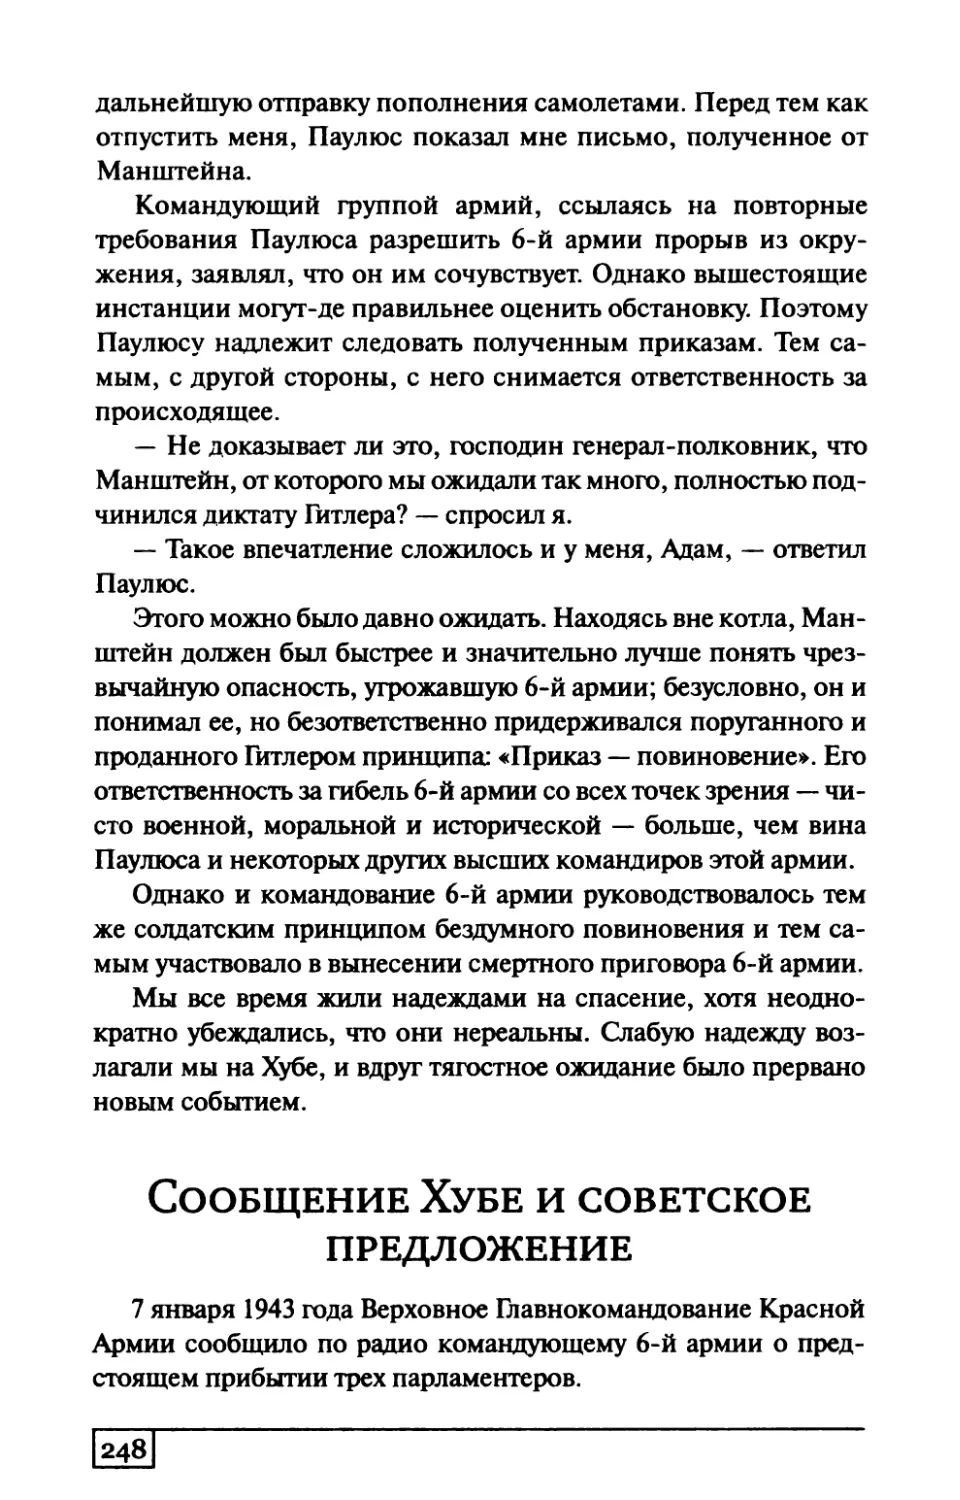 Сообщение Хубе и советское предложение